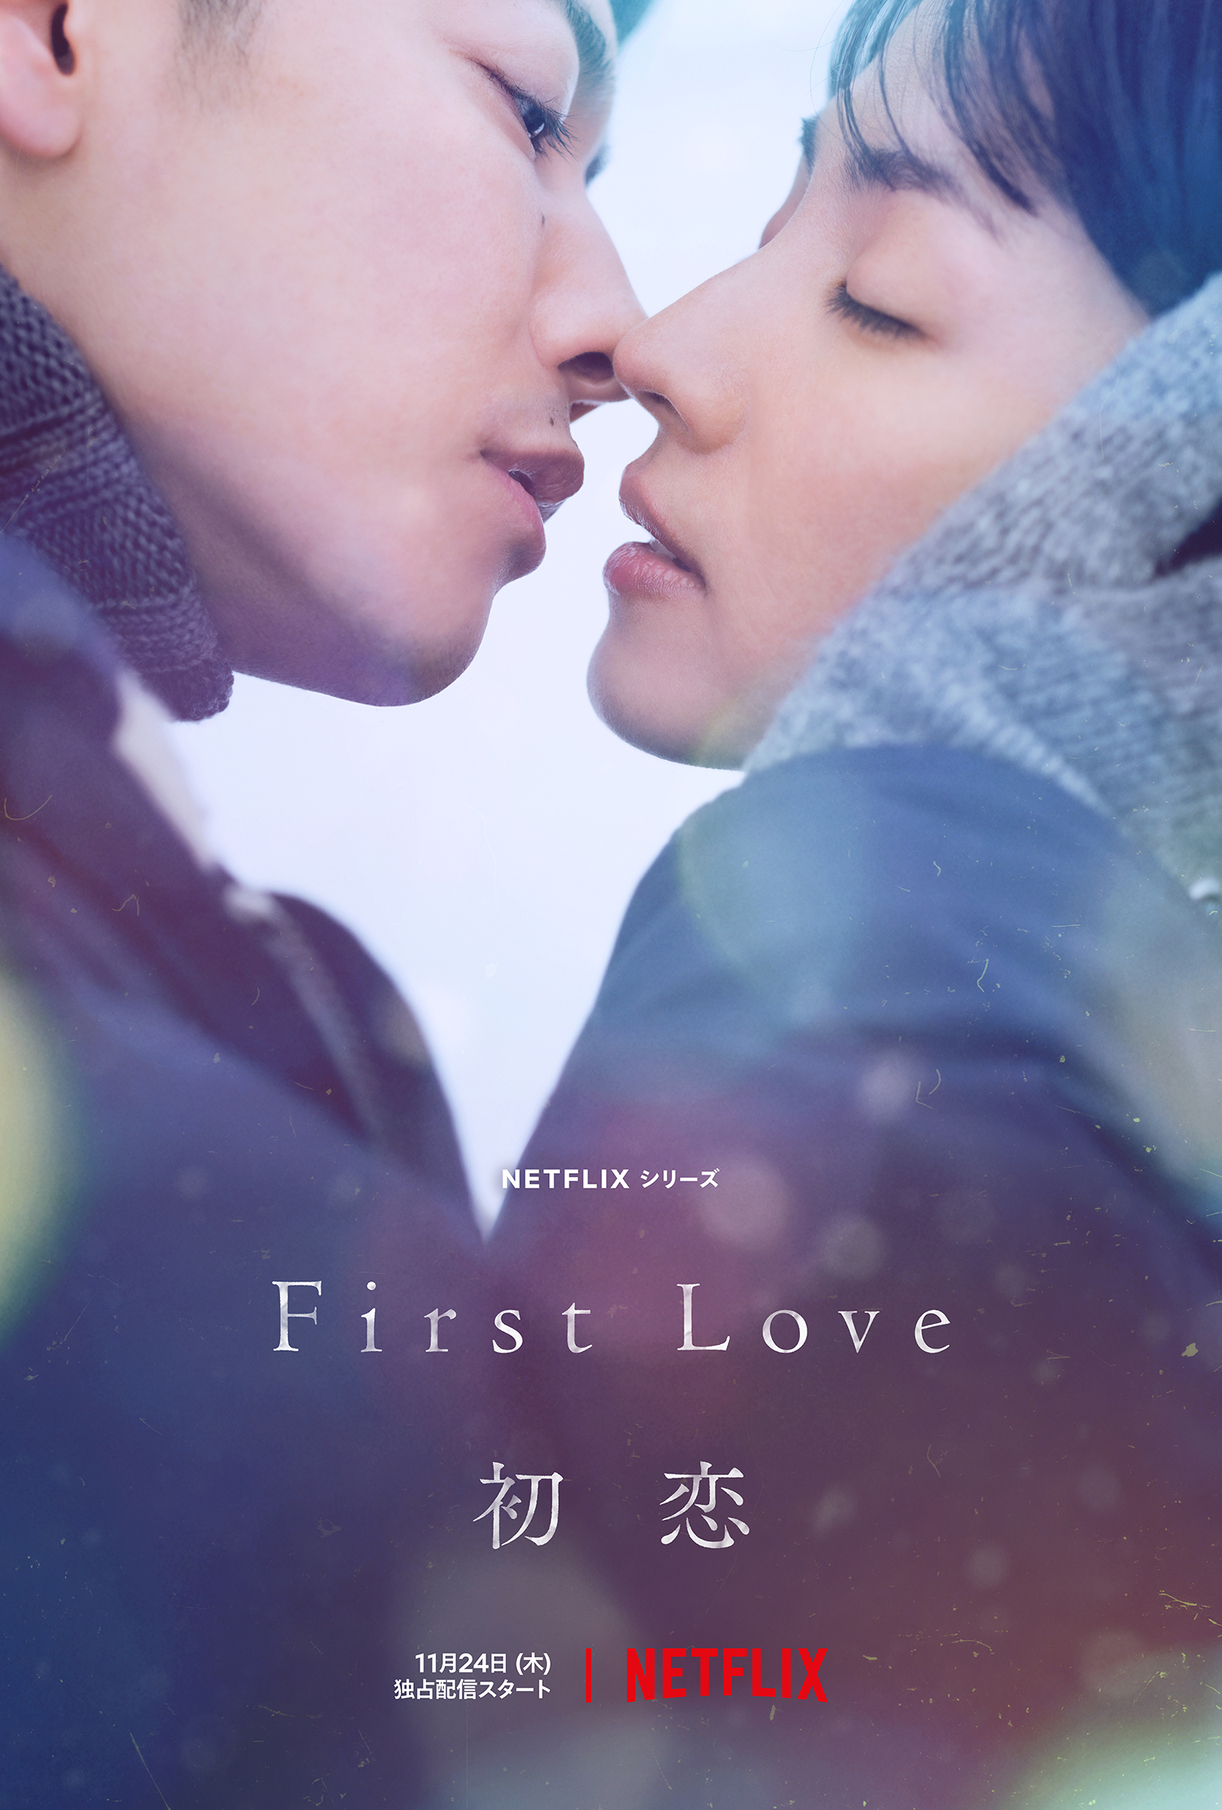 Netflixドラマシリーズ「First Love 初恋」本予告公開　涙する佐藤健の姿も